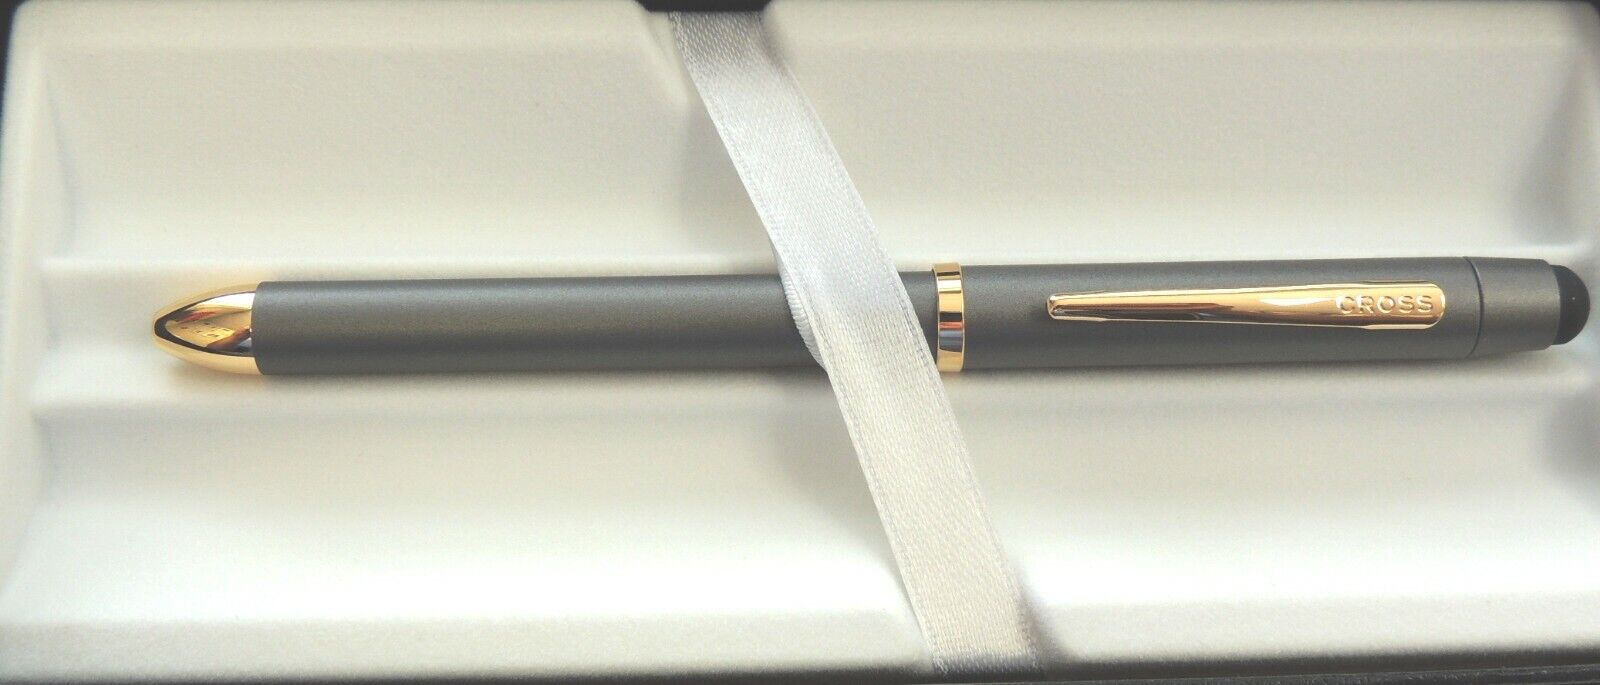 Cross Tech3+ Multi-Function Pen, Gray w/ Gold Trim, New in Box